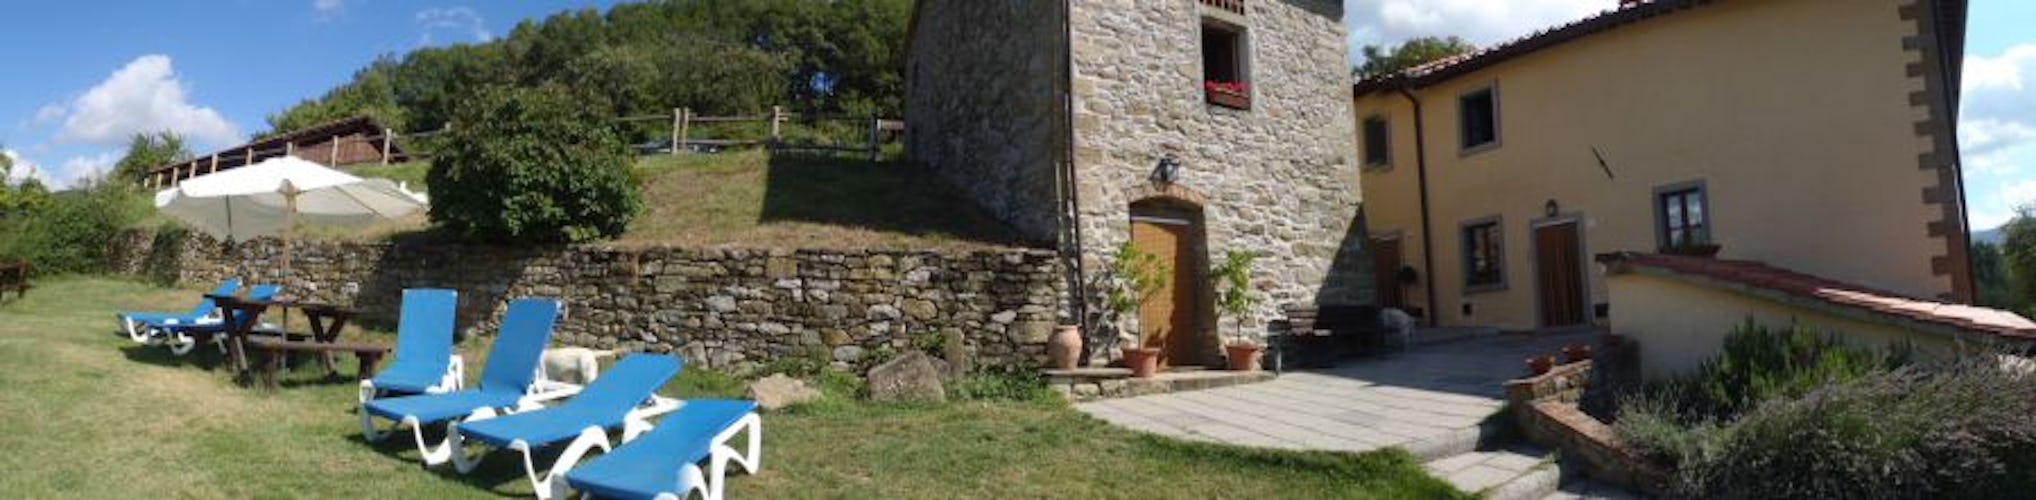 Agriturismo Borgo Tramonte giardino e piscina